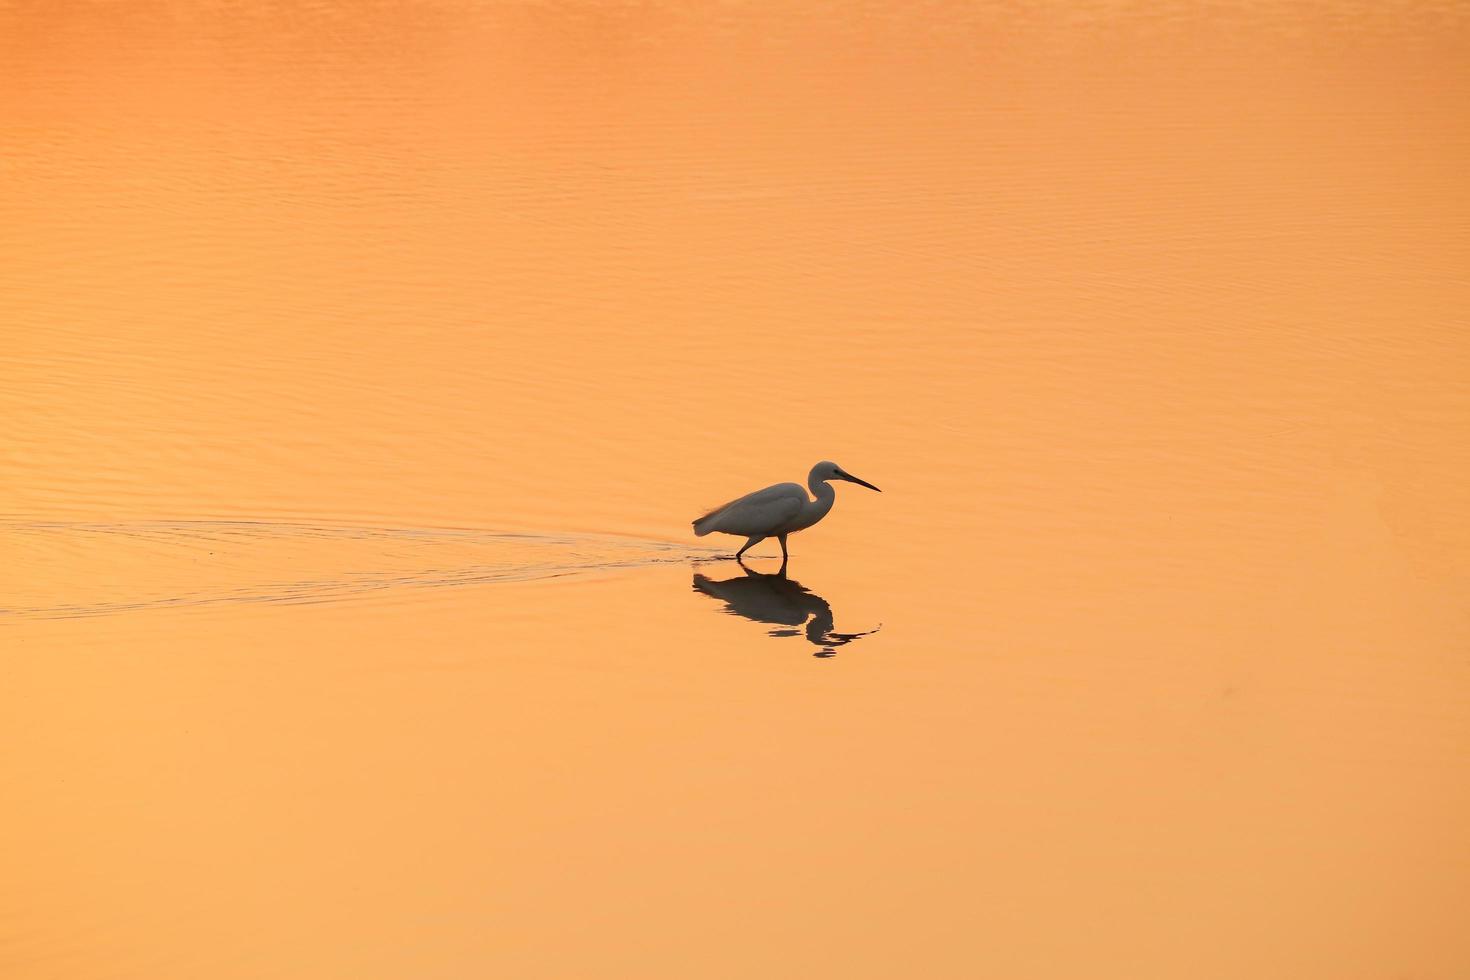 fågel som går i vatten, fåglar som flyger, solnedgångsutsikt vid sjön foto